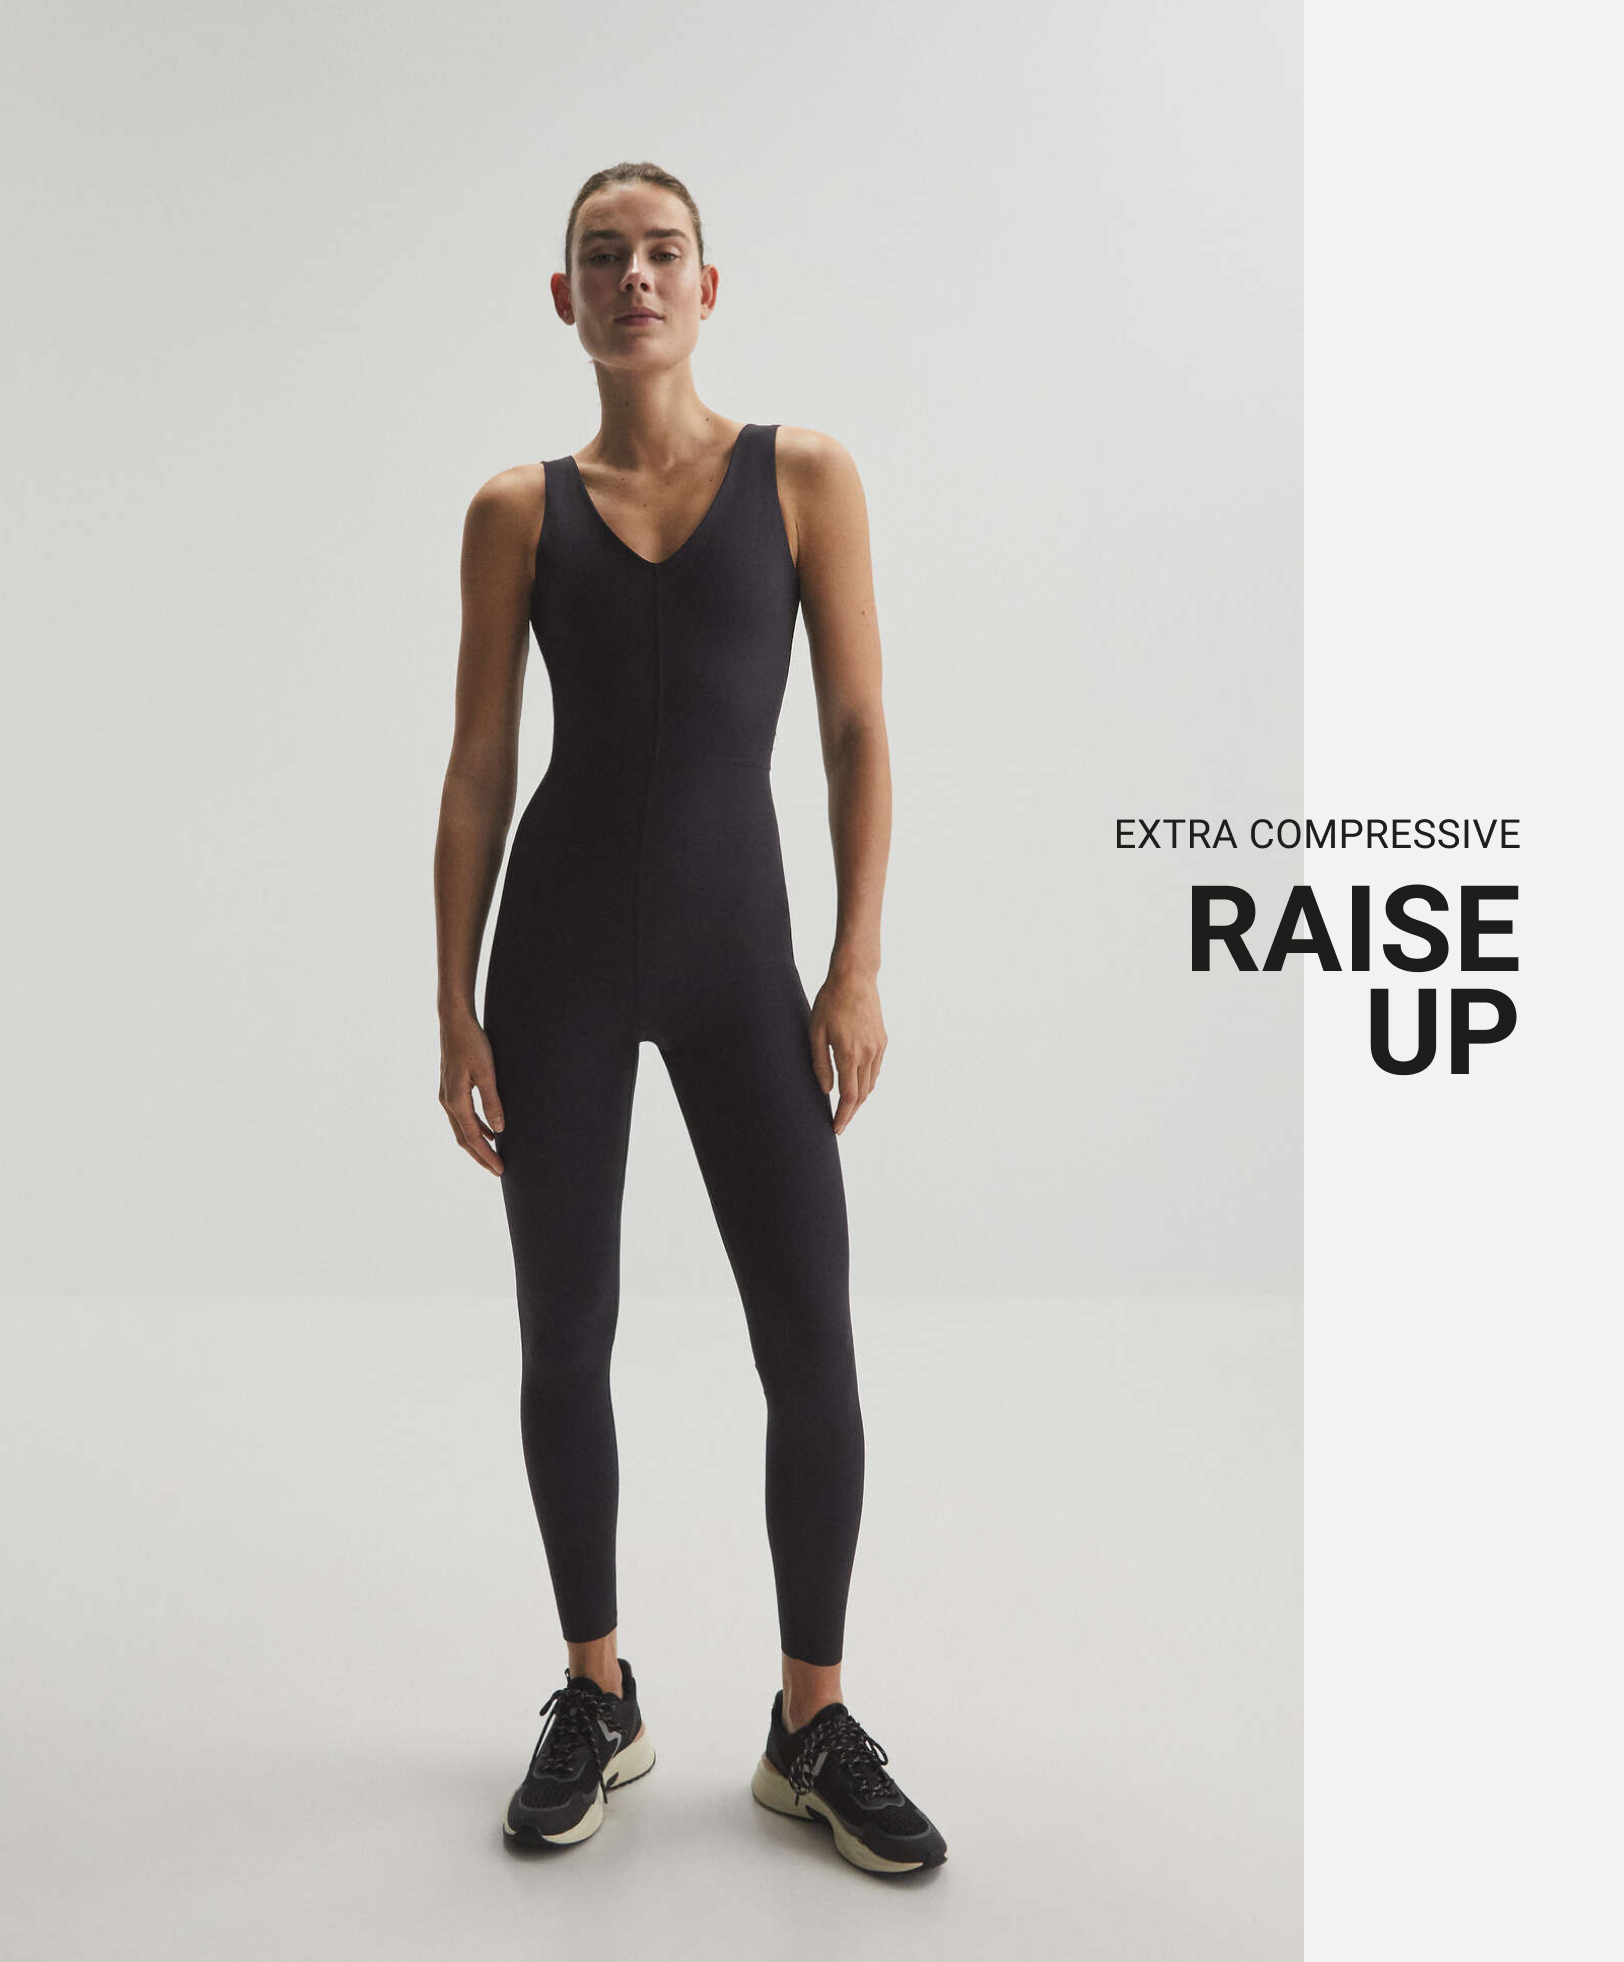 Extra compressive raise up jumpsuit